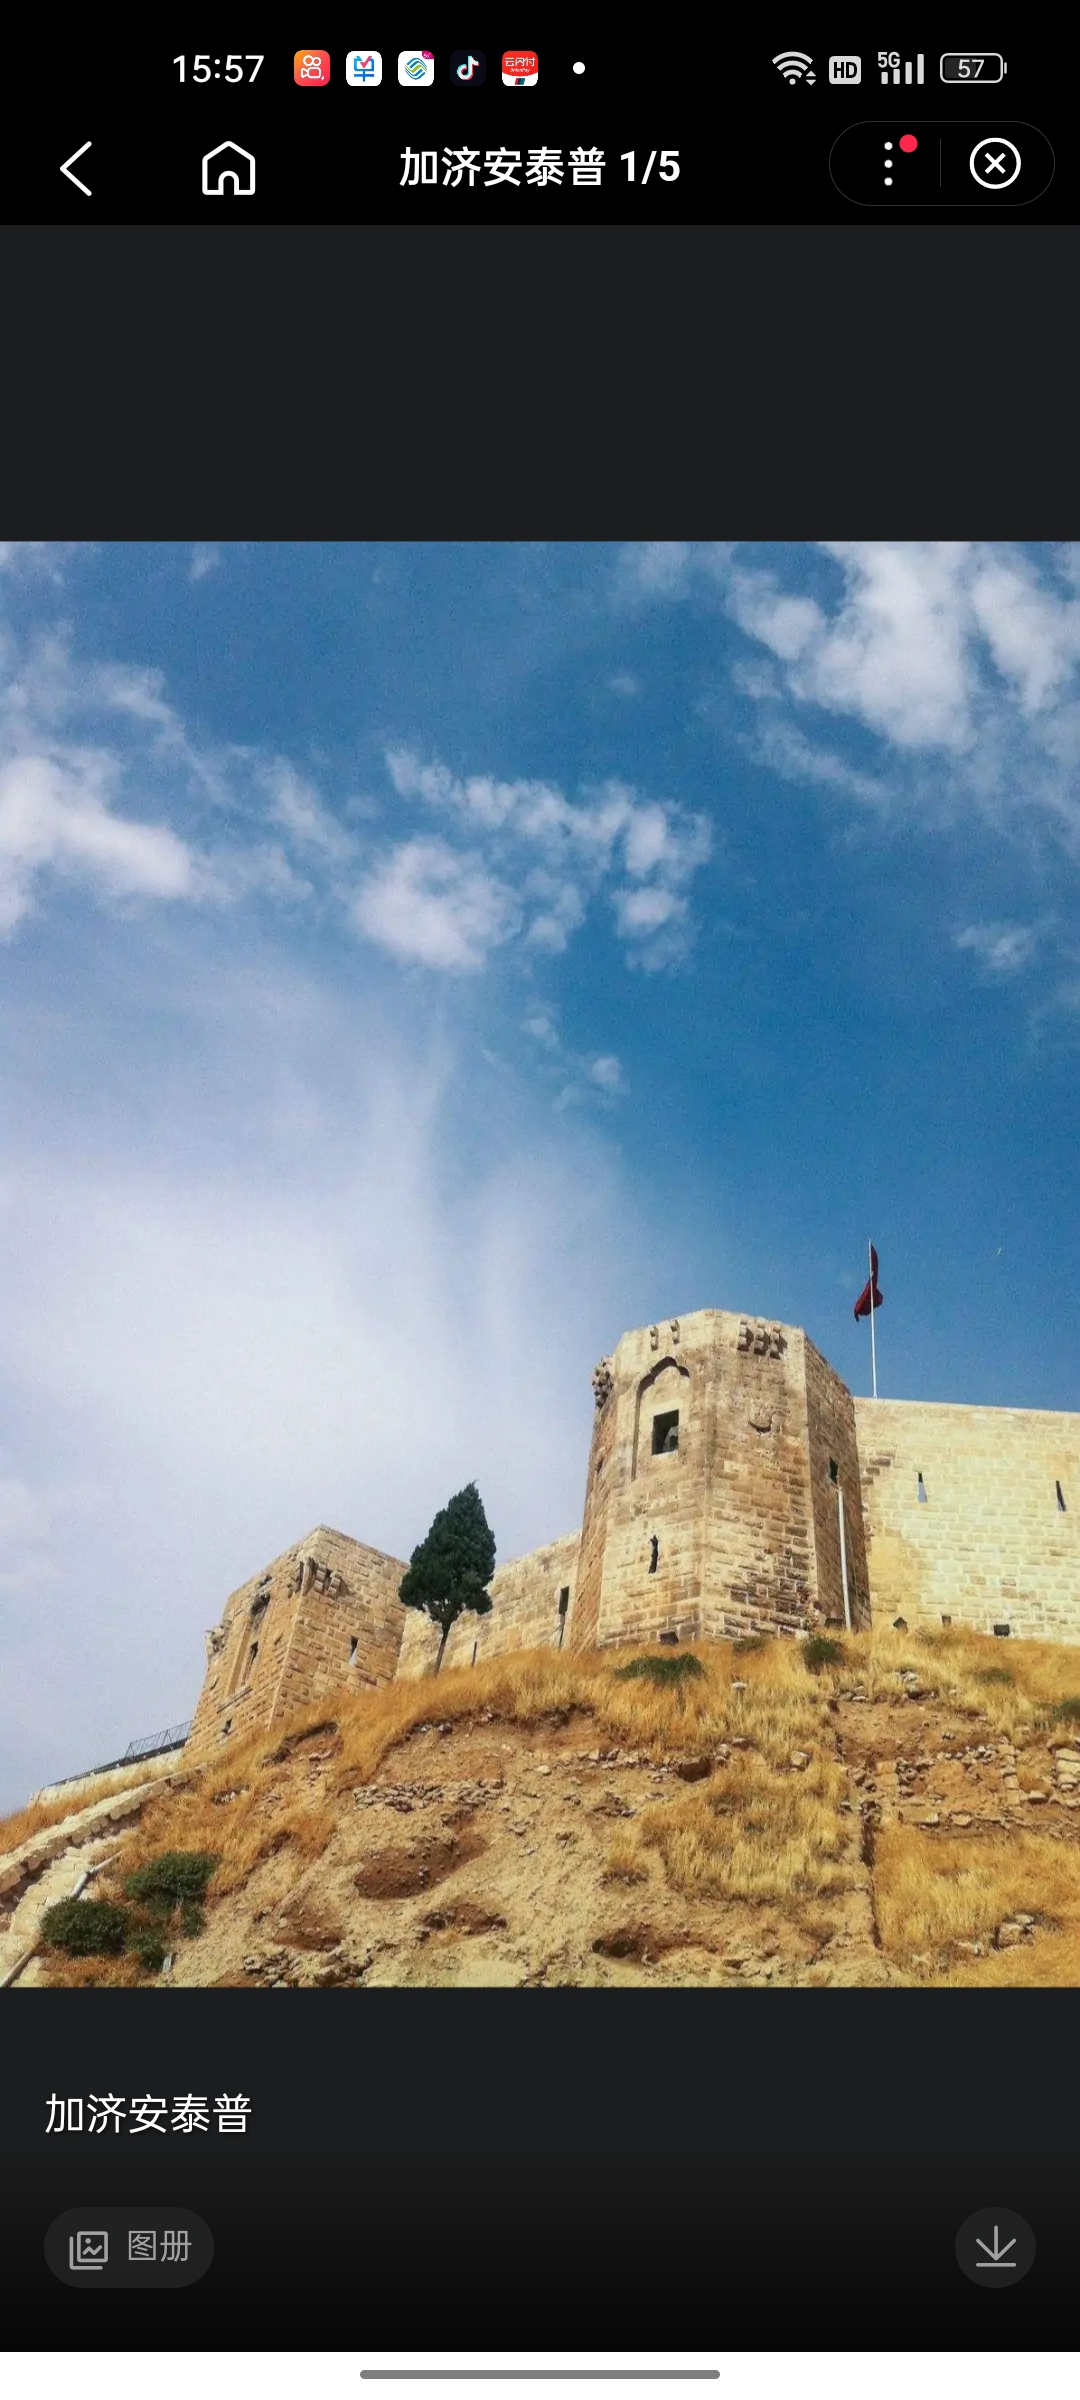 加济安泰普古堡始建于公元2世纪到3世纪，最早作为瞭望塔使用，后多次扩建。加济安泰普古堡被视为土耳其堡